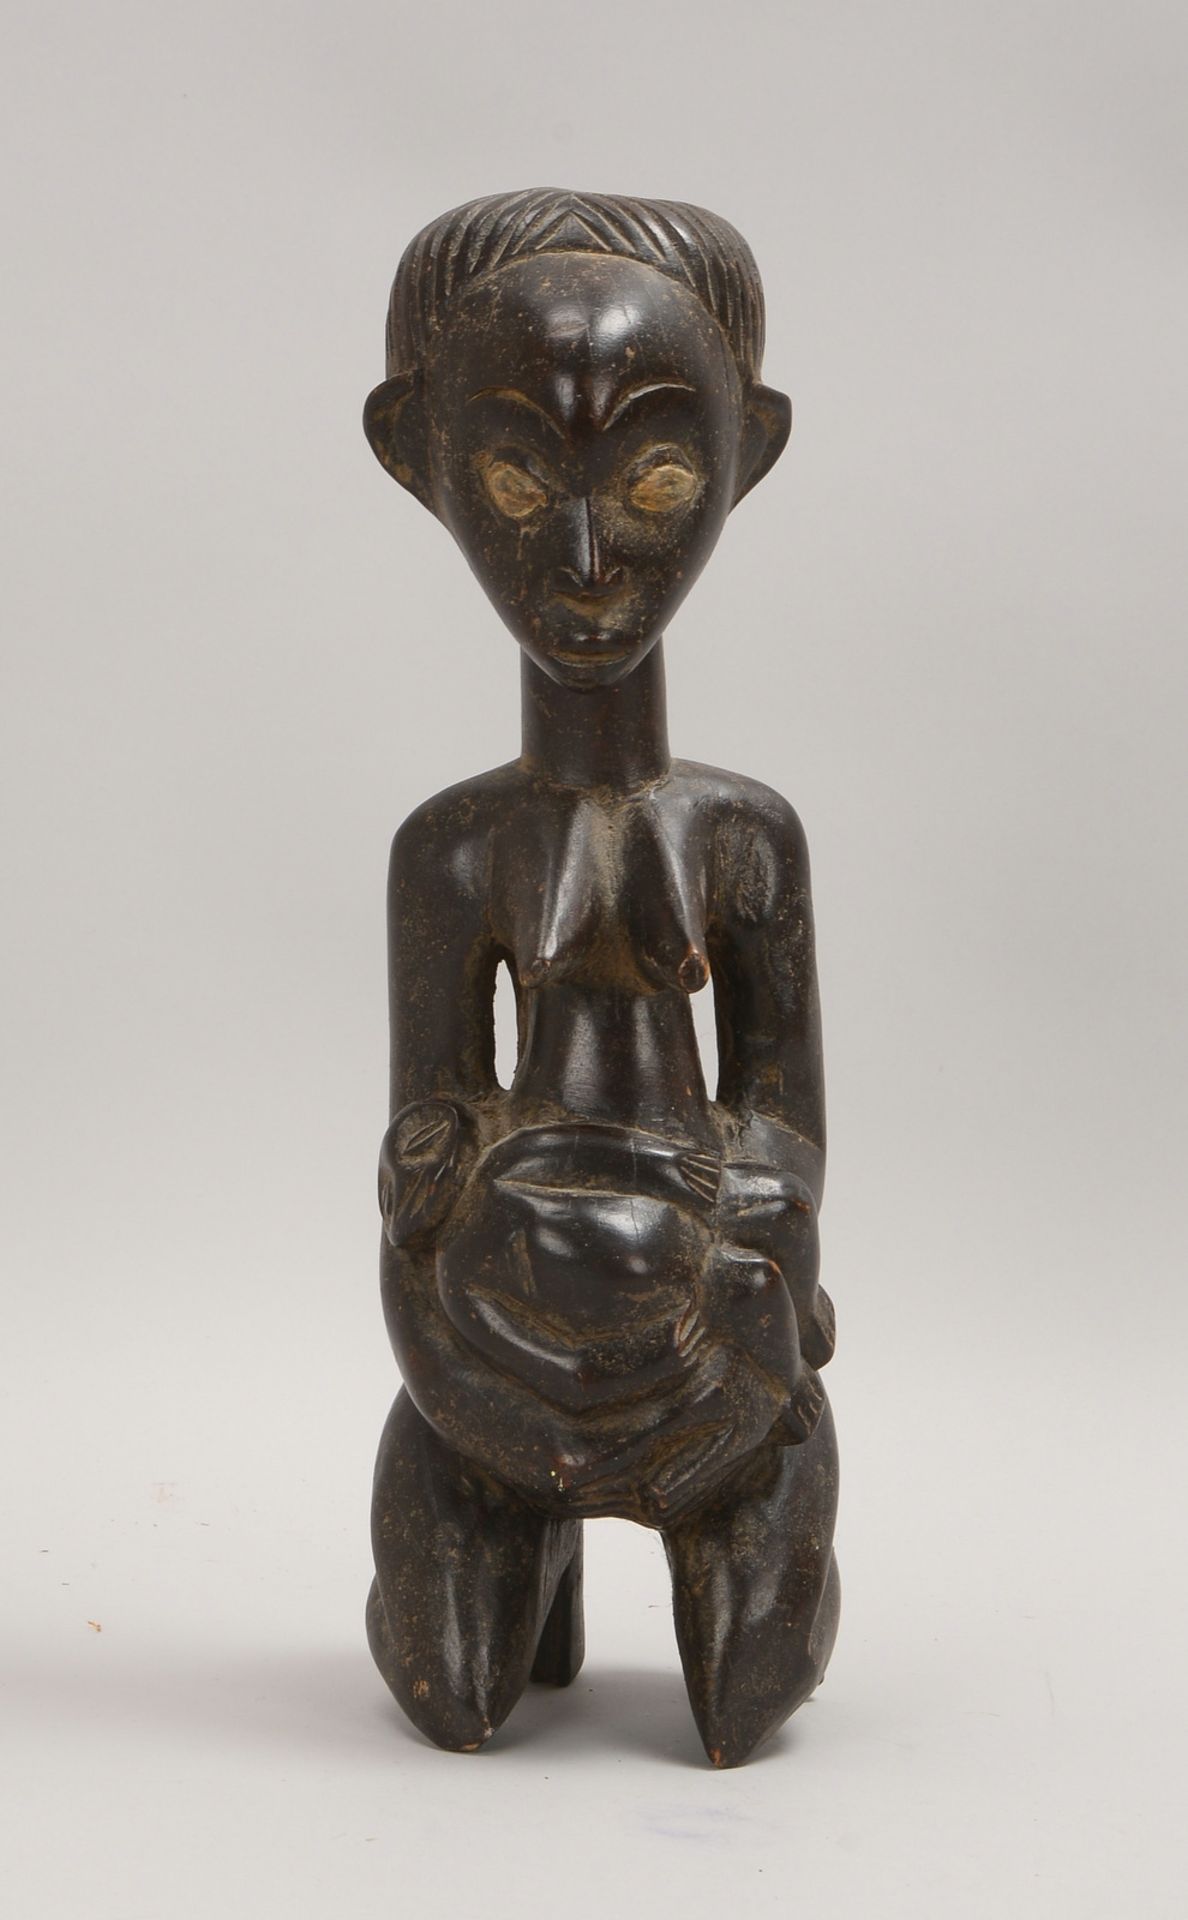 Holzfigur, 'Fruchtbarkeitsfigur' - Darstellung einer Frau mit Kind; Höhe 39 cm - Bild 2 aus 2